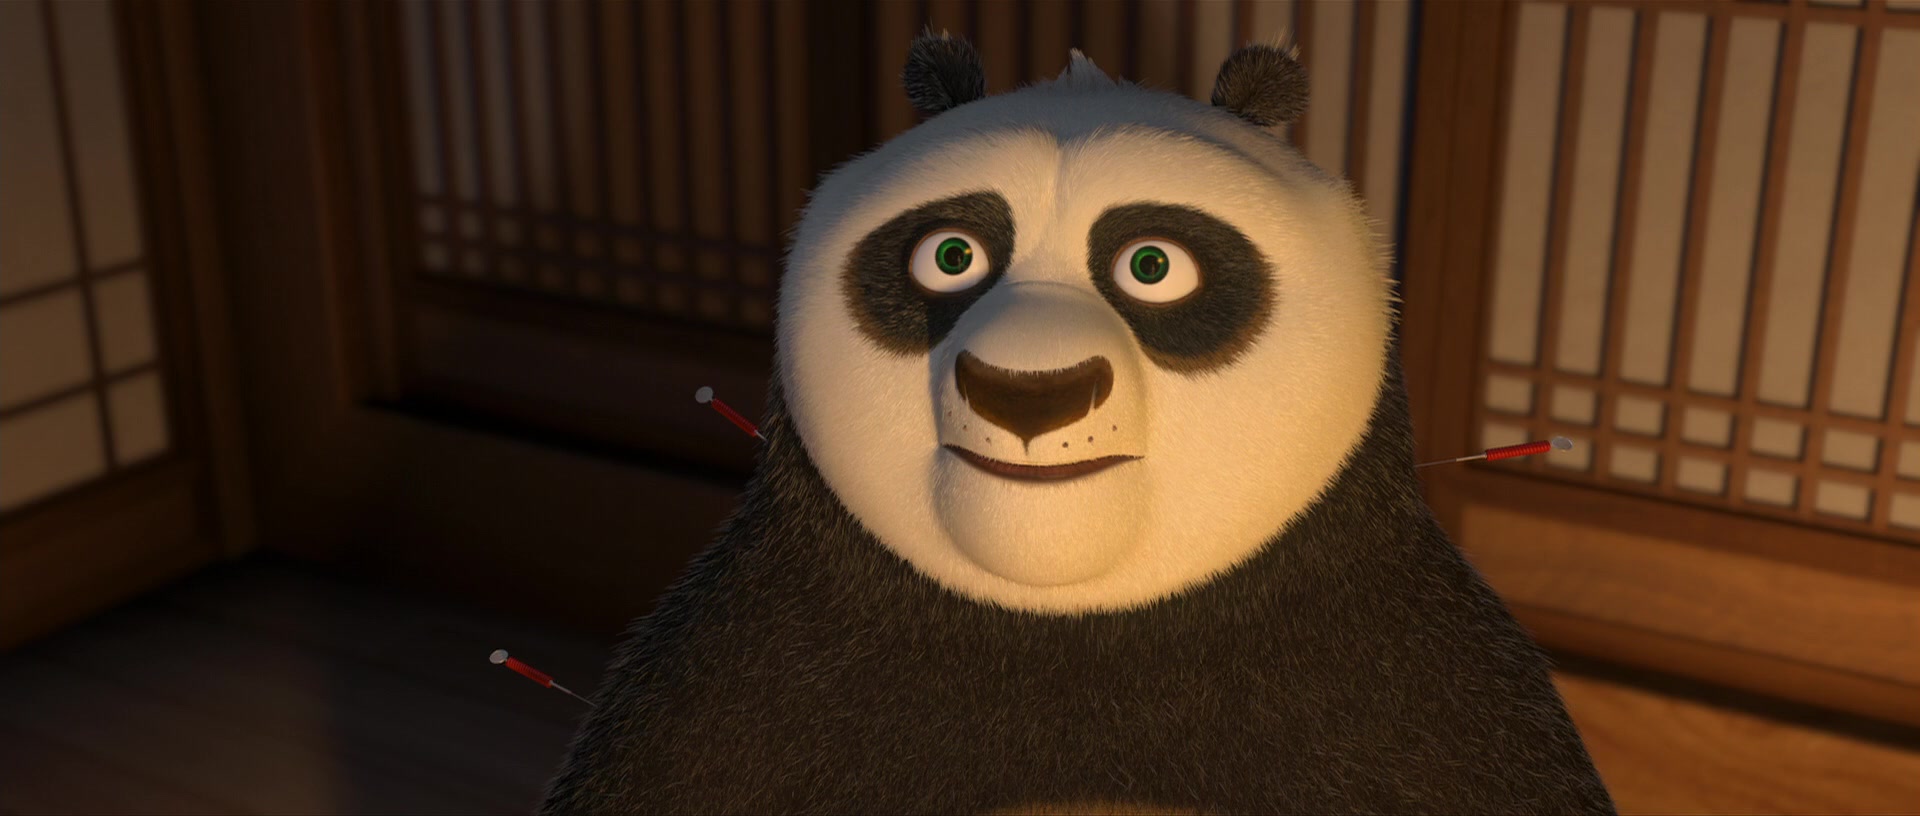 Kung Fu Panda Screencap | Fancaps